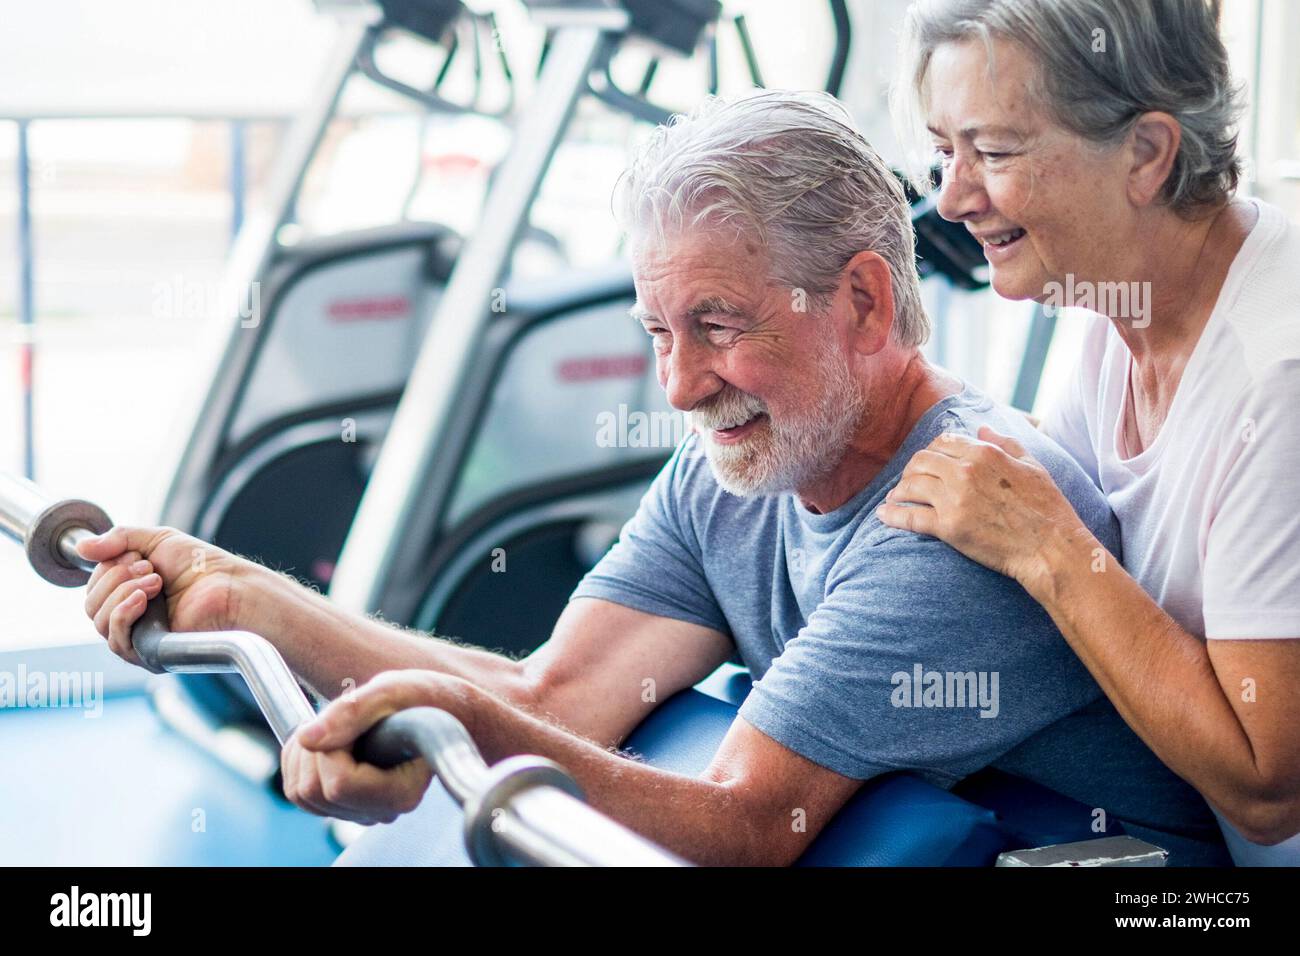 Schönes Paar von zwei Senioren im Fitnessstudio, die Übungen machen Mit einem starken Licht im Hintergrund - Frau umarmt Ihr Mann hält einen barr - aktiven Lebensstil Stockfoto